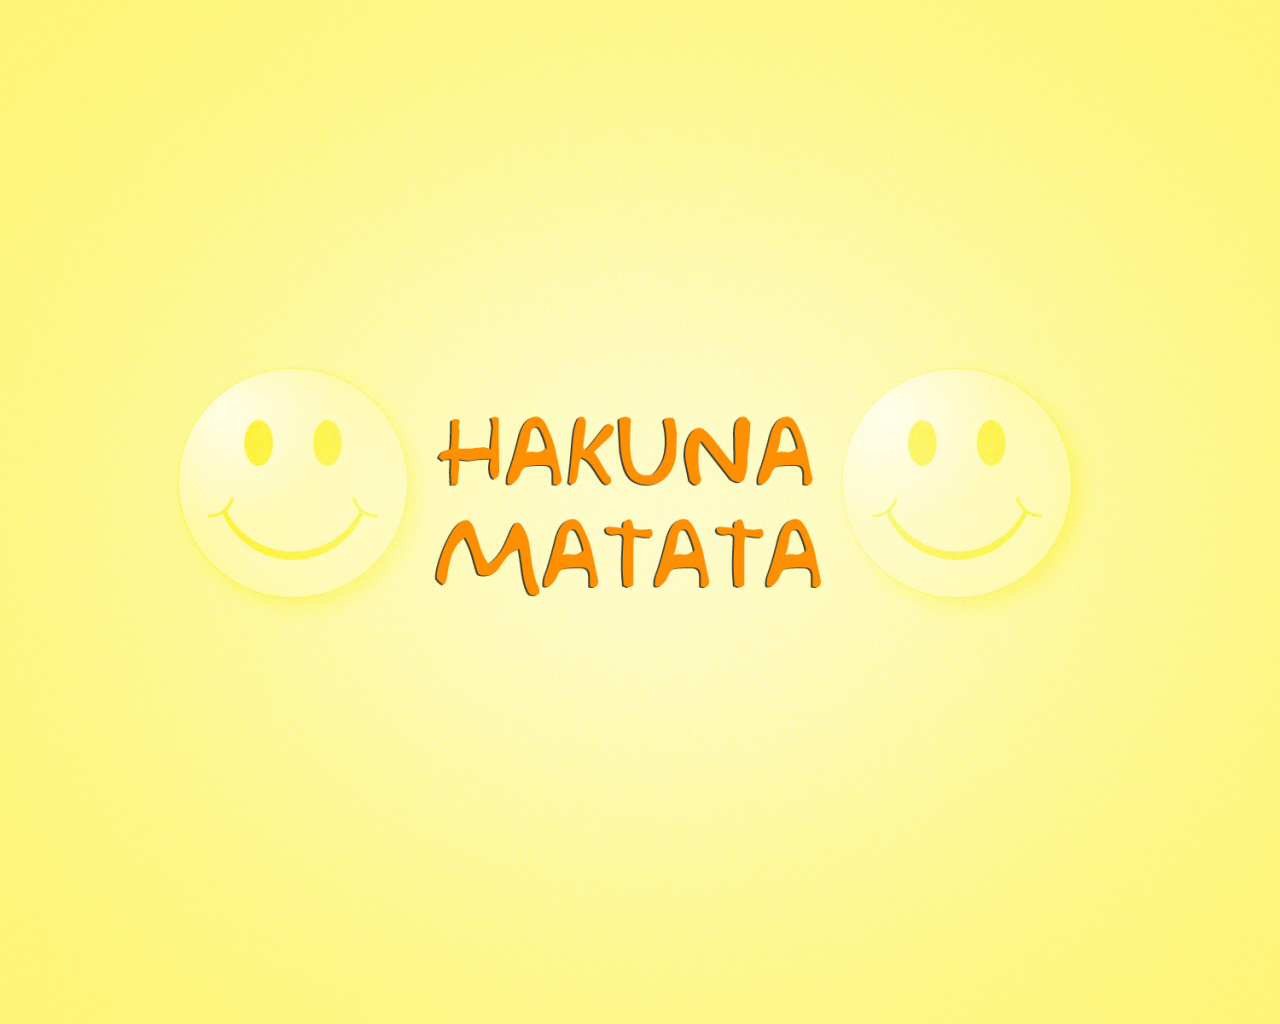 акуна матата, фраза из мультфильма, Слова, hakuna matata